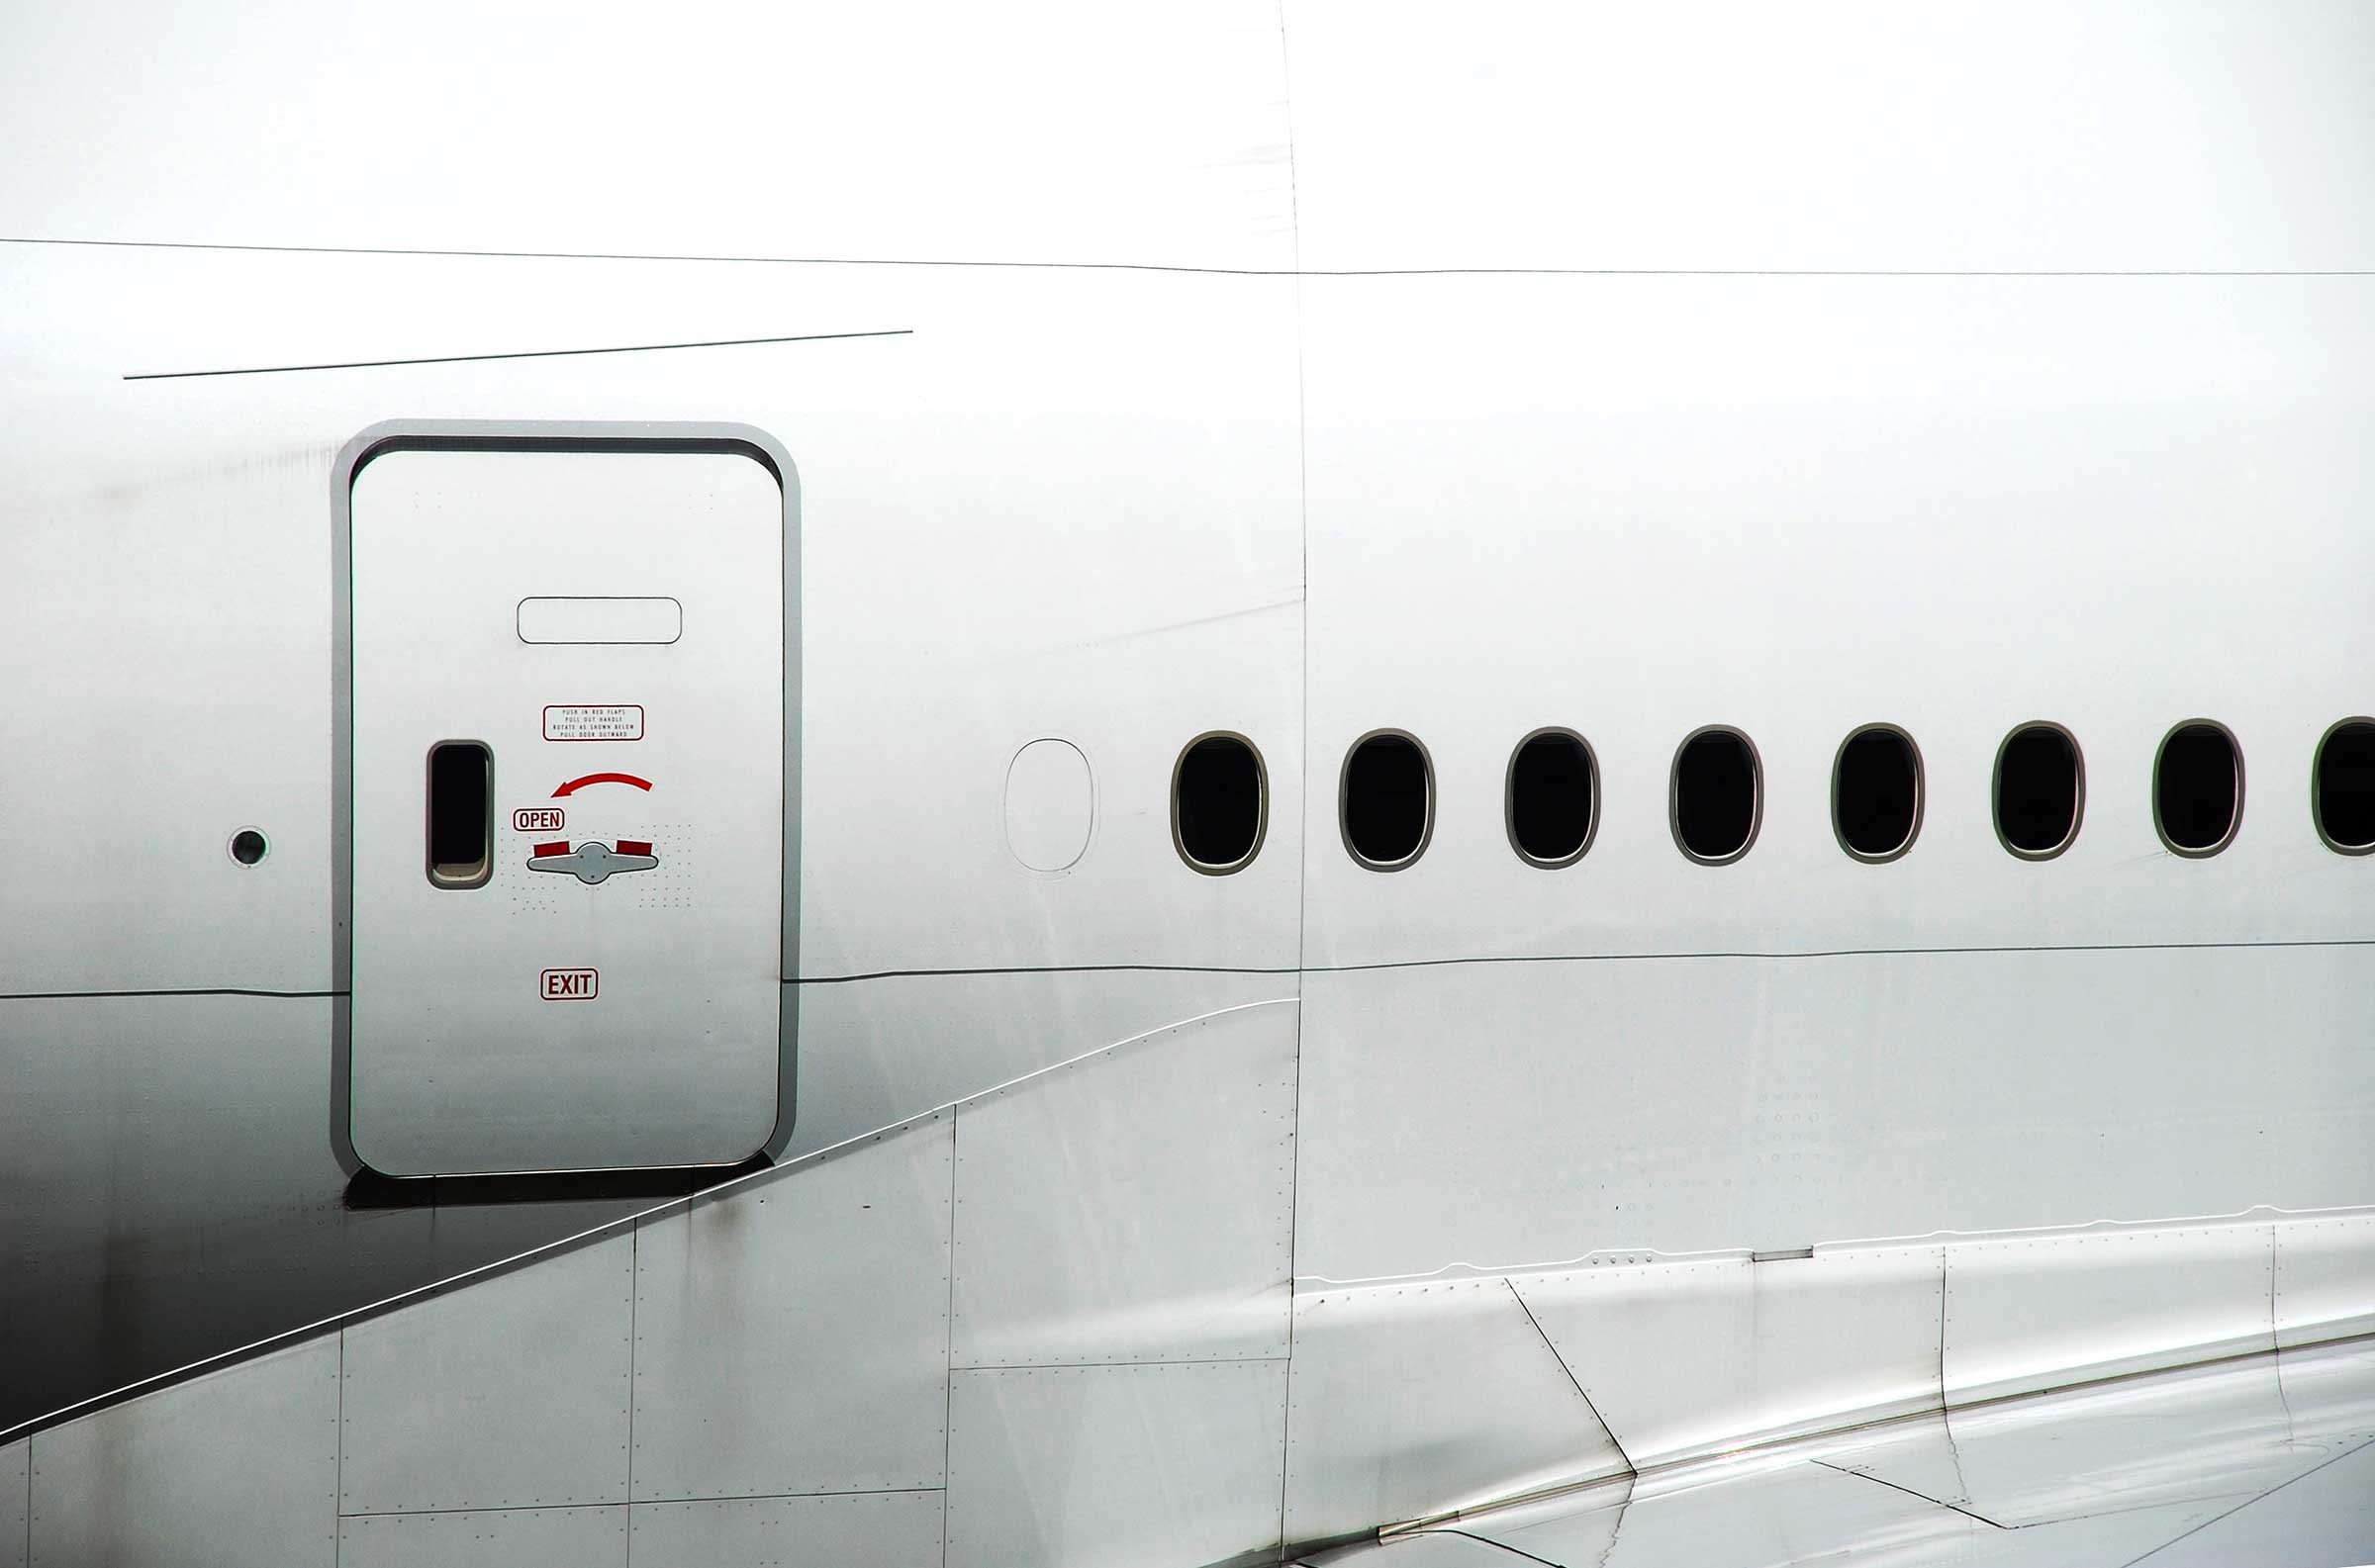 9 rumori che senti sugli aeroplani e cosa significano 